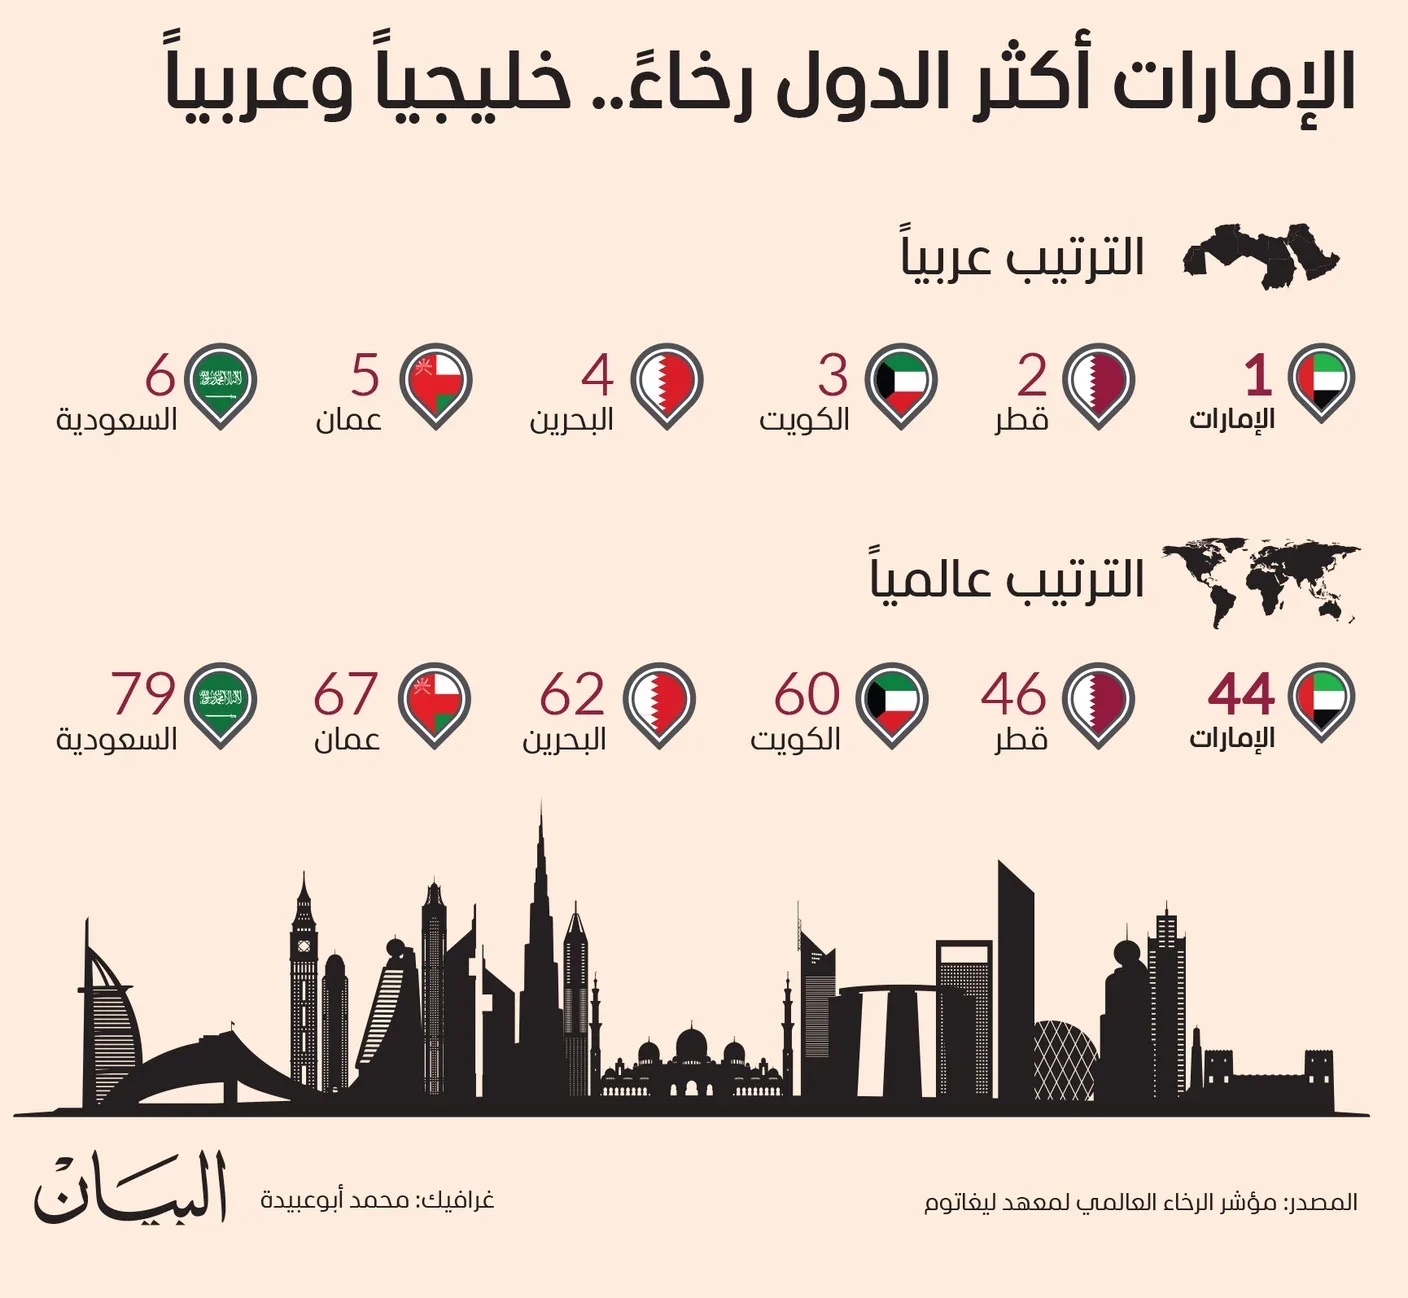 الإمارات أكثر الدول رخاءً خليجياً وعربياً